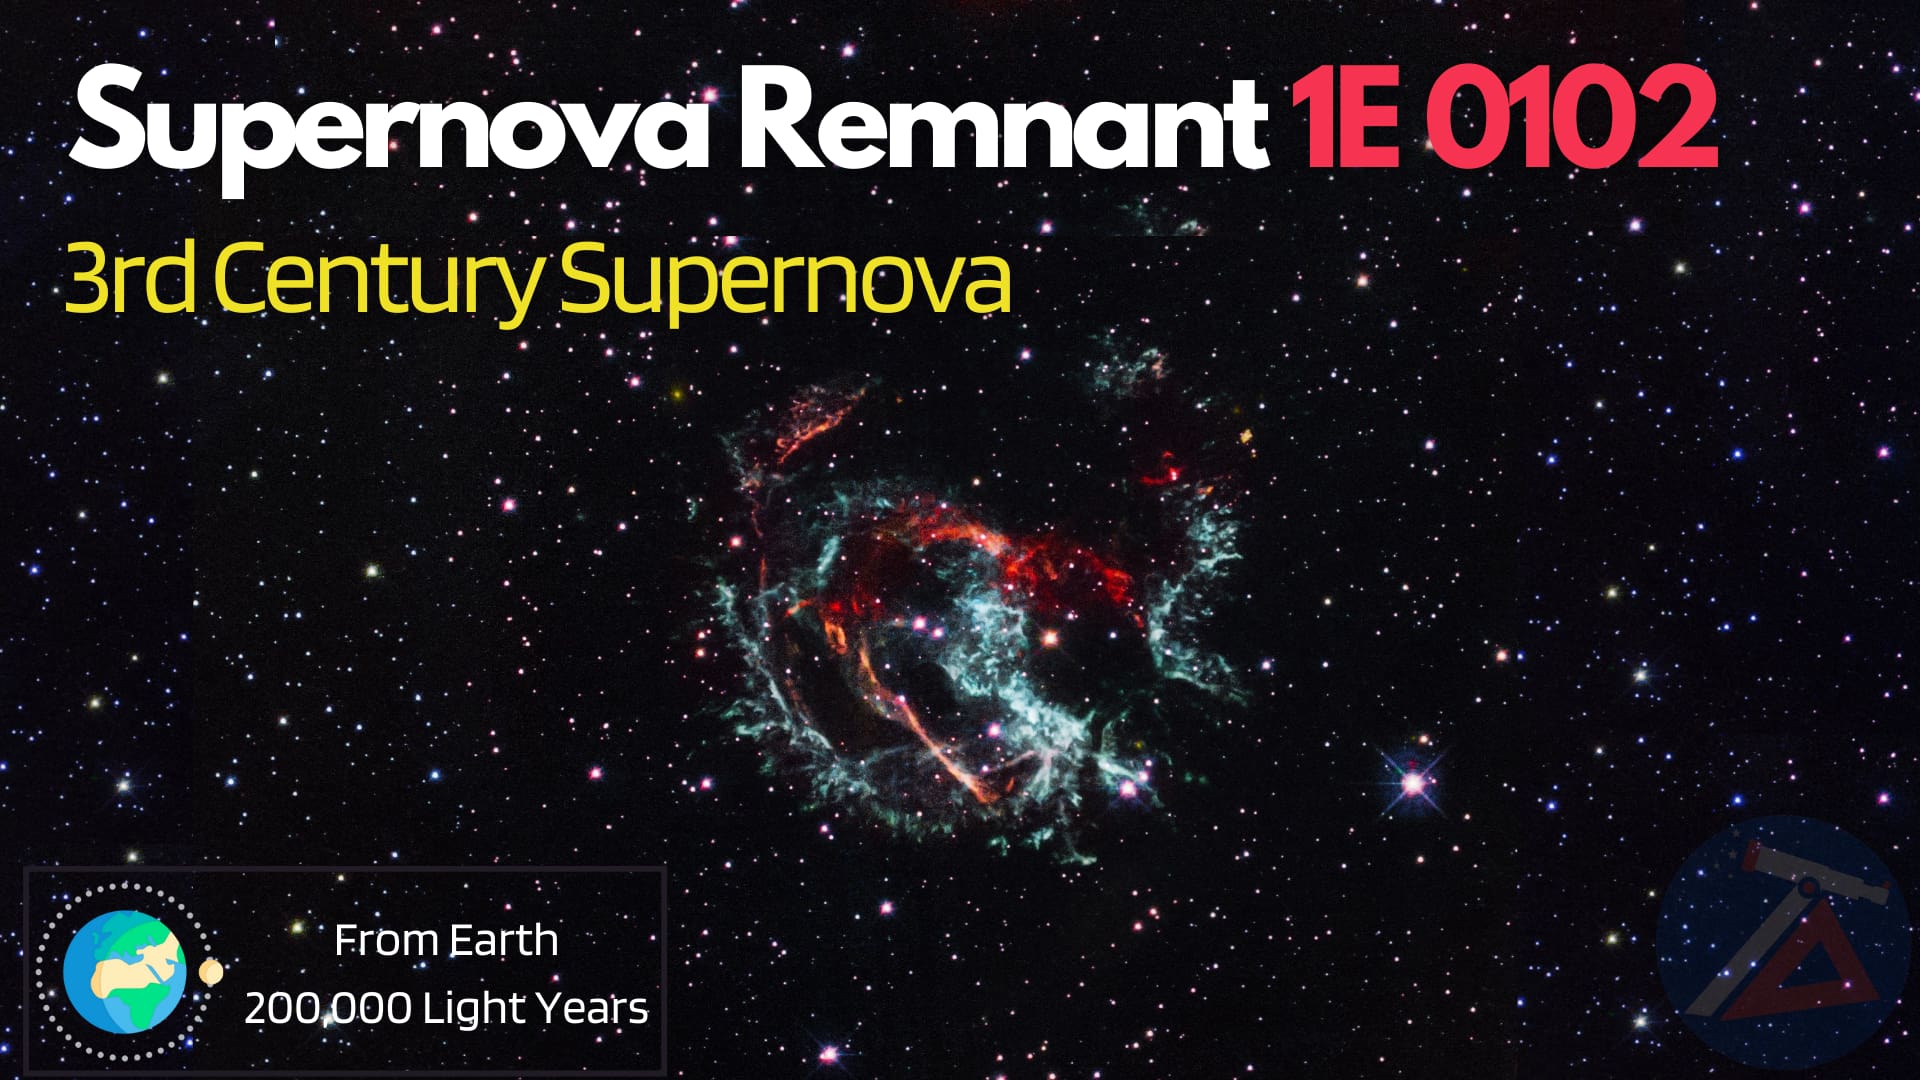 3rd century supernova eruption - Supernova Remnant 1E 0102